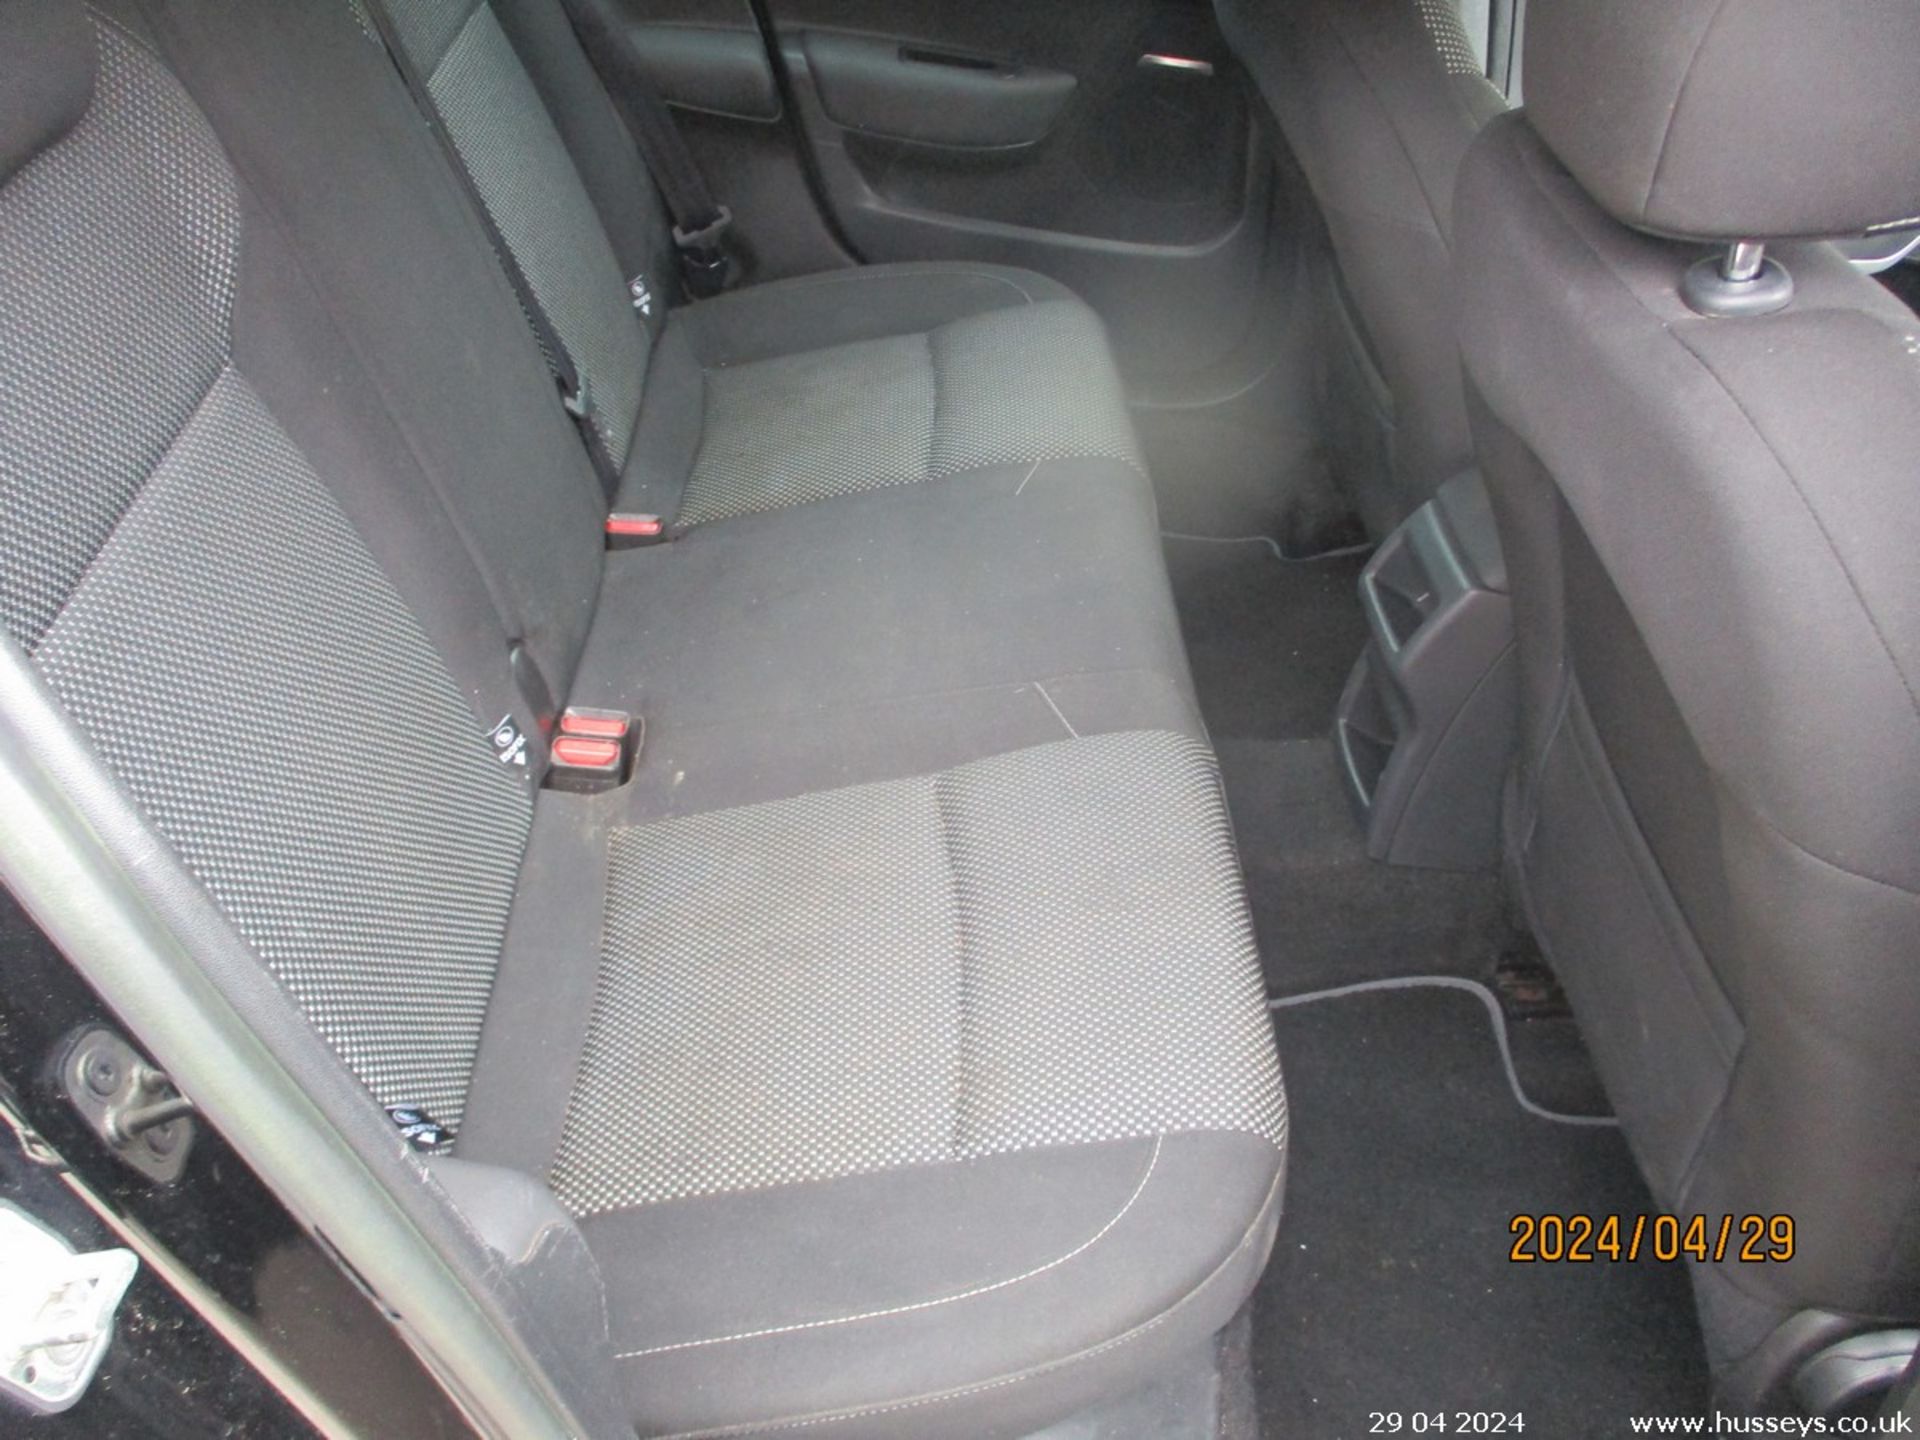 13/13 CITROEN DS4 DSIGN HDI - 1560cc 5dr Hatchback (Black, 135k) - Image 24 of 29